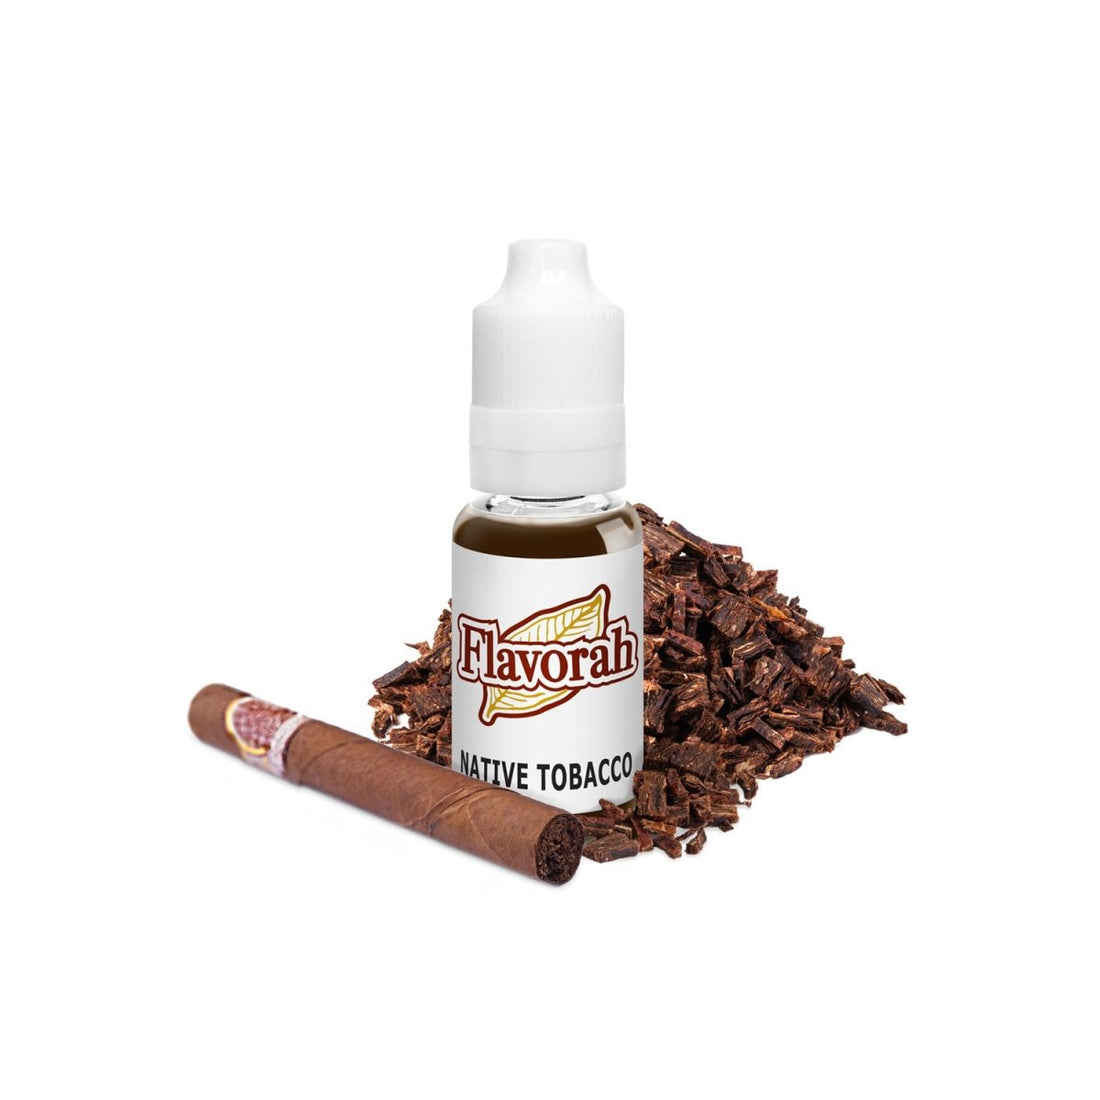 Native Tobacco FLV - Aroma - Flavorah | AR-FLV-NAT